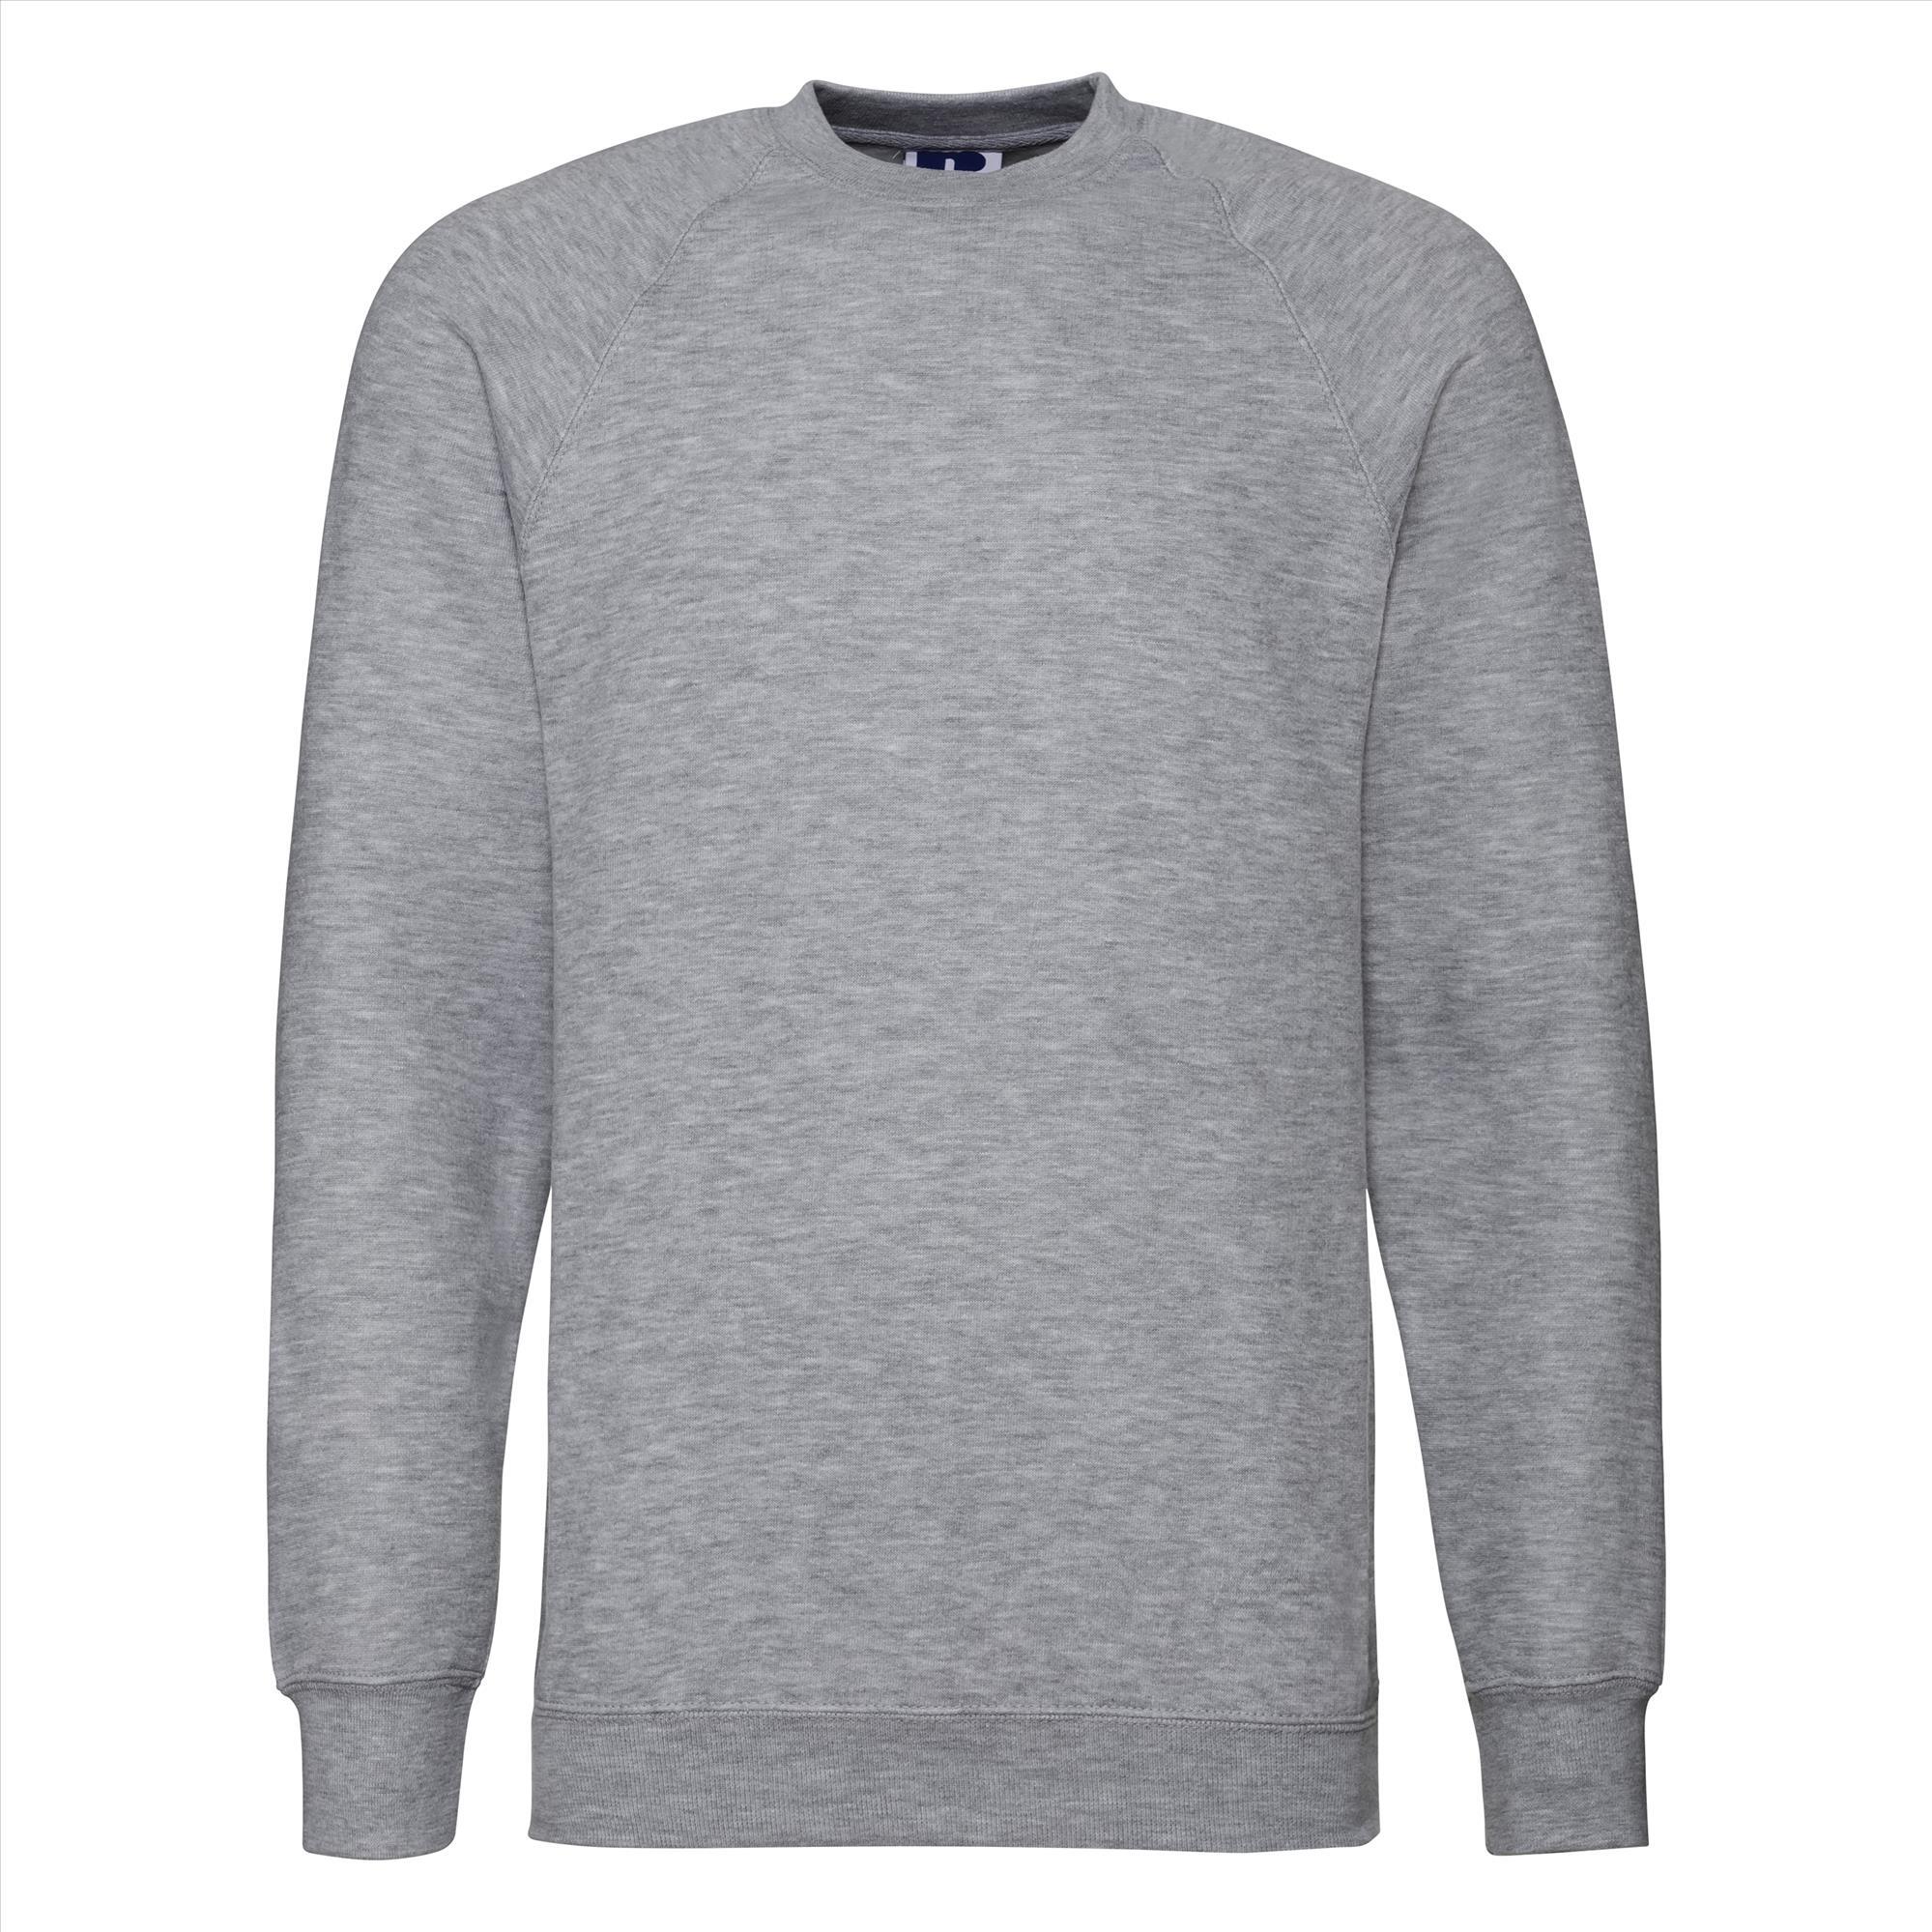 Sweatshirt trui lichtgrijs voor mannen perfect voor personaliseren bedrukking